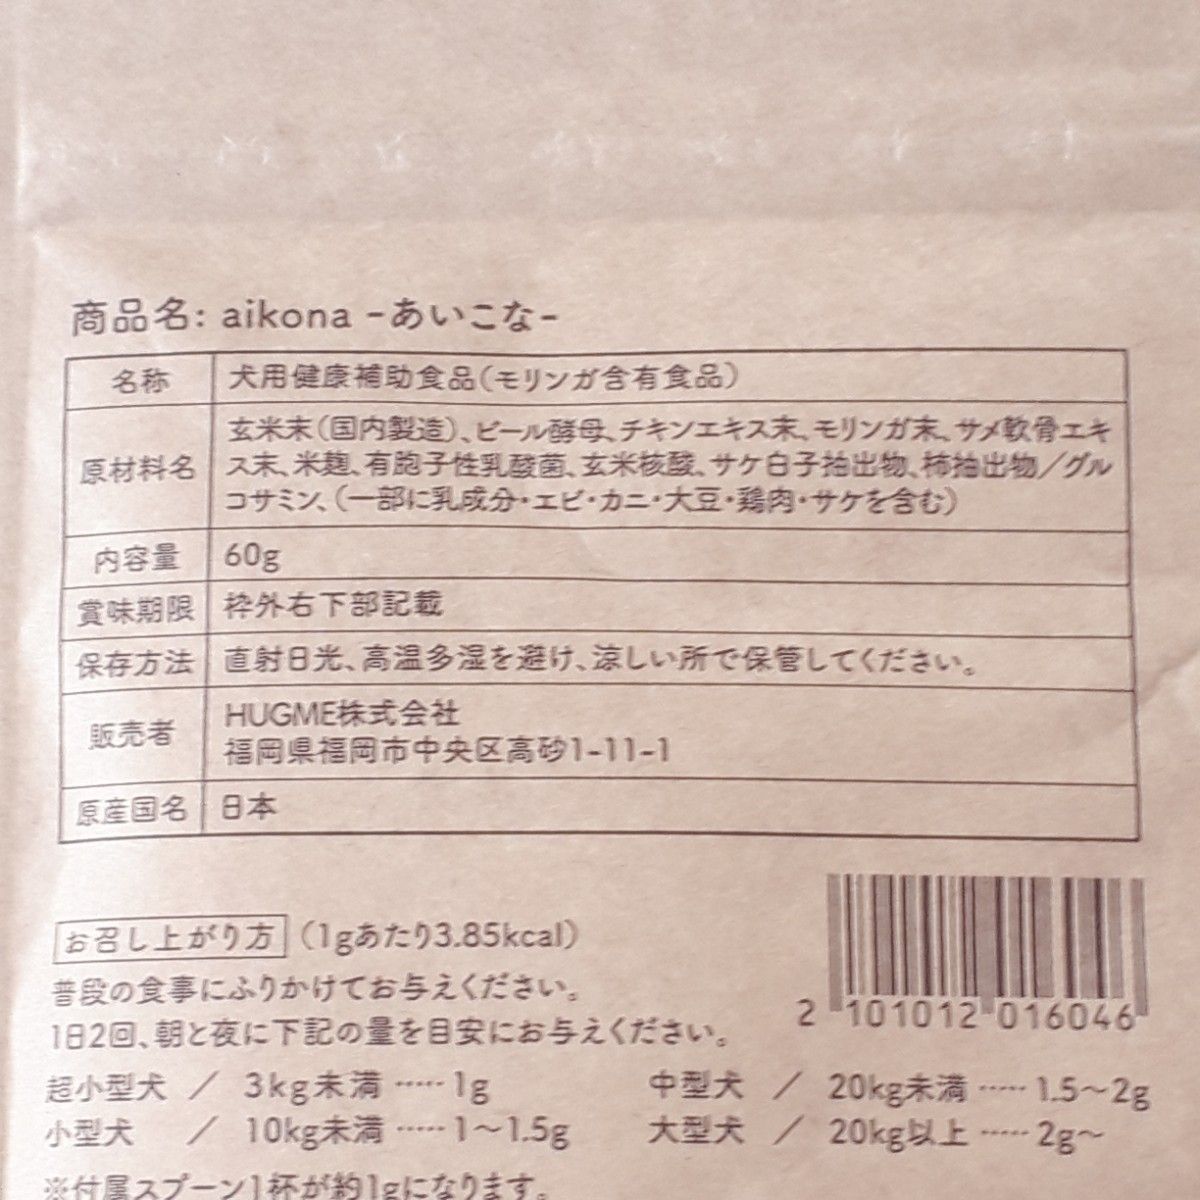 【3袋】あいこな aikona 60g スプーン付き 新品未開封